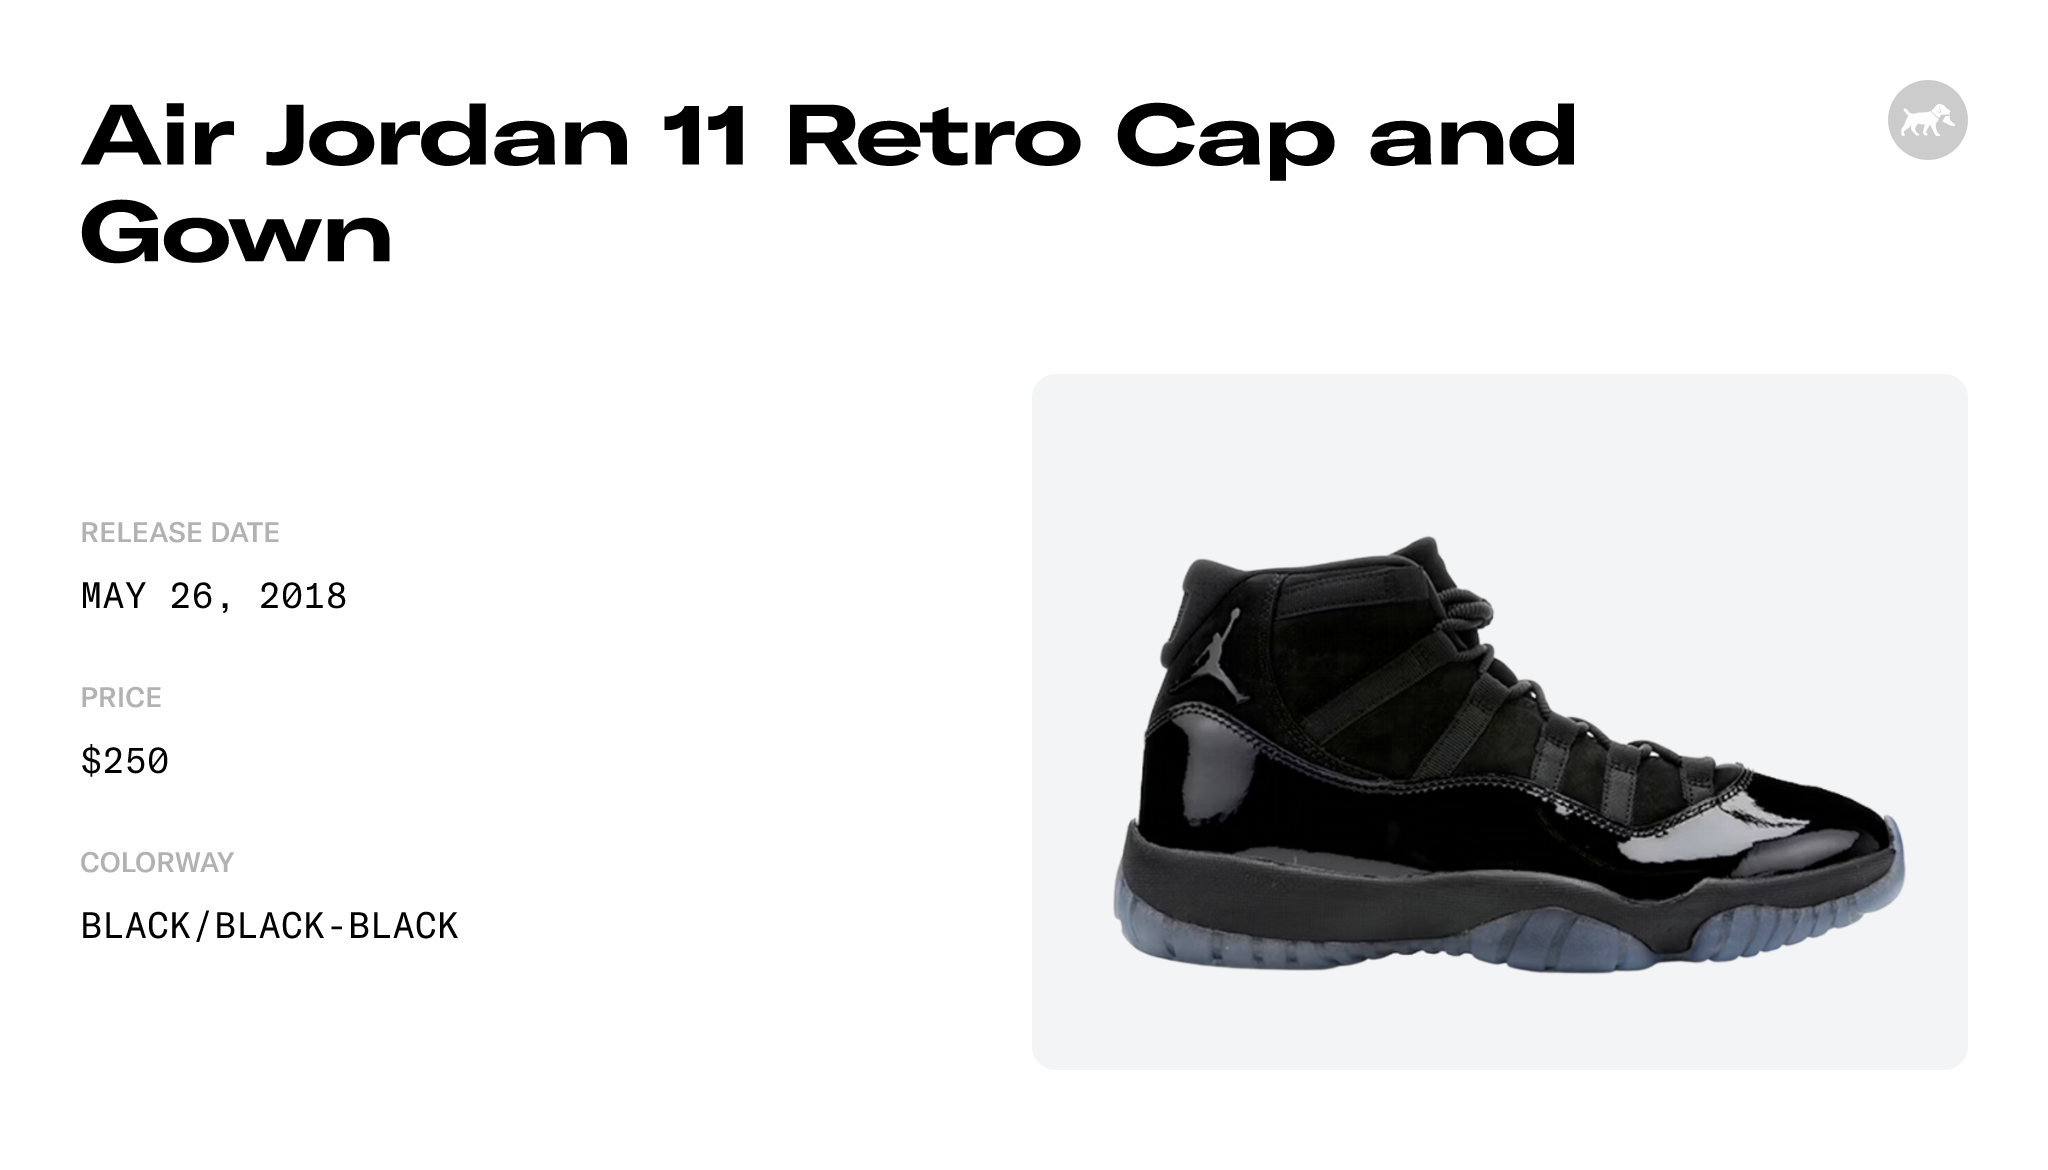 Air Jordan 11 Retro Cap and Gown - 378037-005 Raffles and Release Date